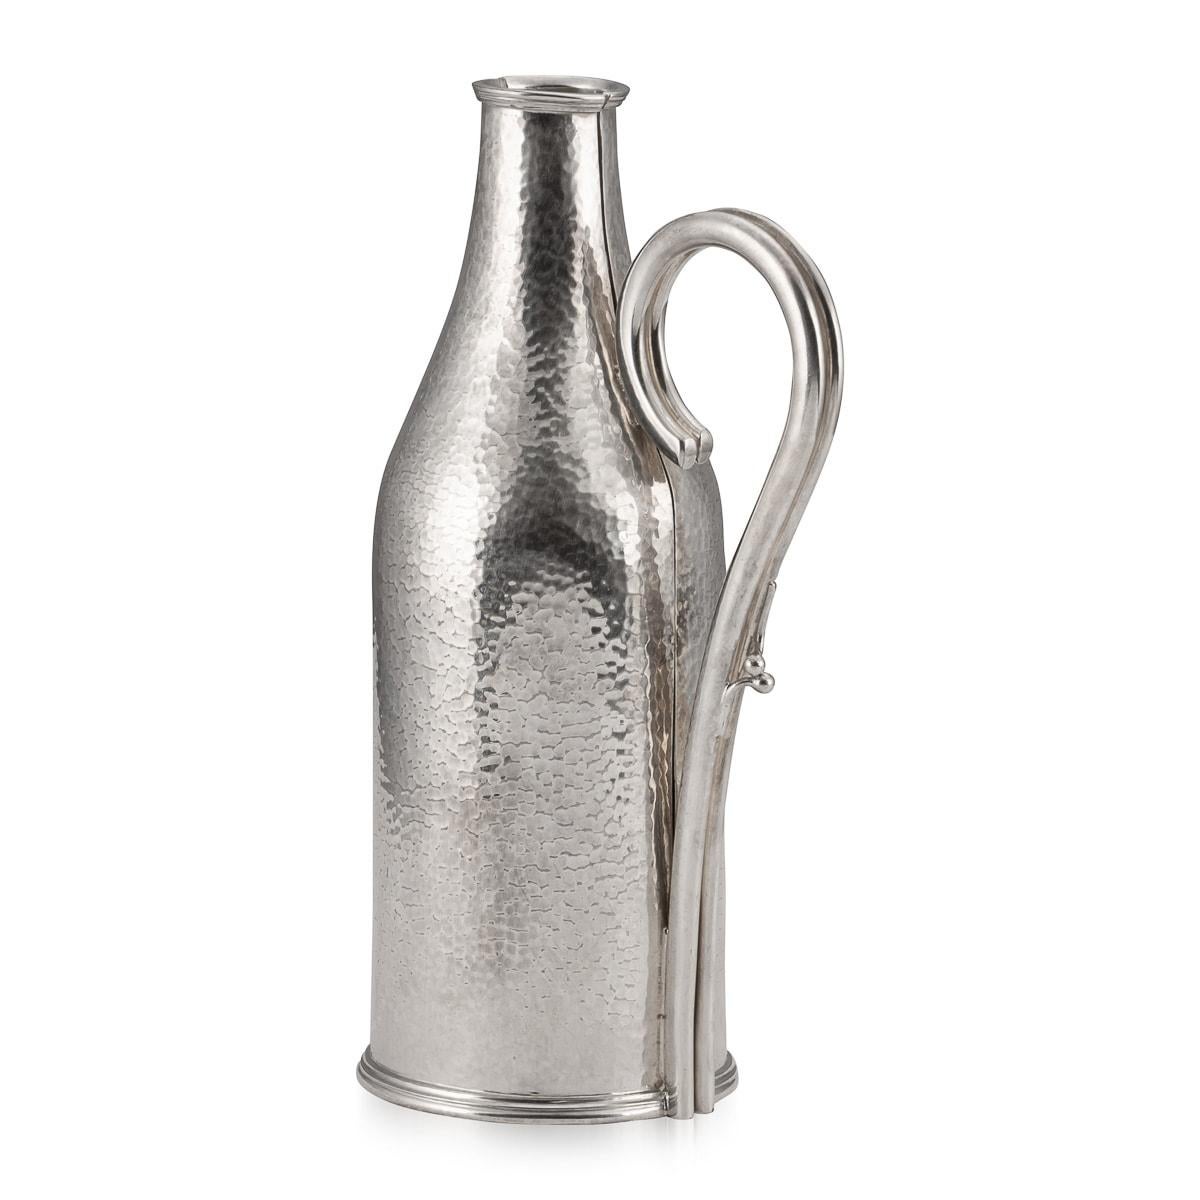 Un joli porte-bouteille en métal argenté, fabriqué dans la première moitié du XXe siècle en Angleterre et vendu par le célèbre joaillier Mappin and Webb. Il est conçu pour abriter une bouteille ayant la forme d'un champagne ou d'un prosecco moderne